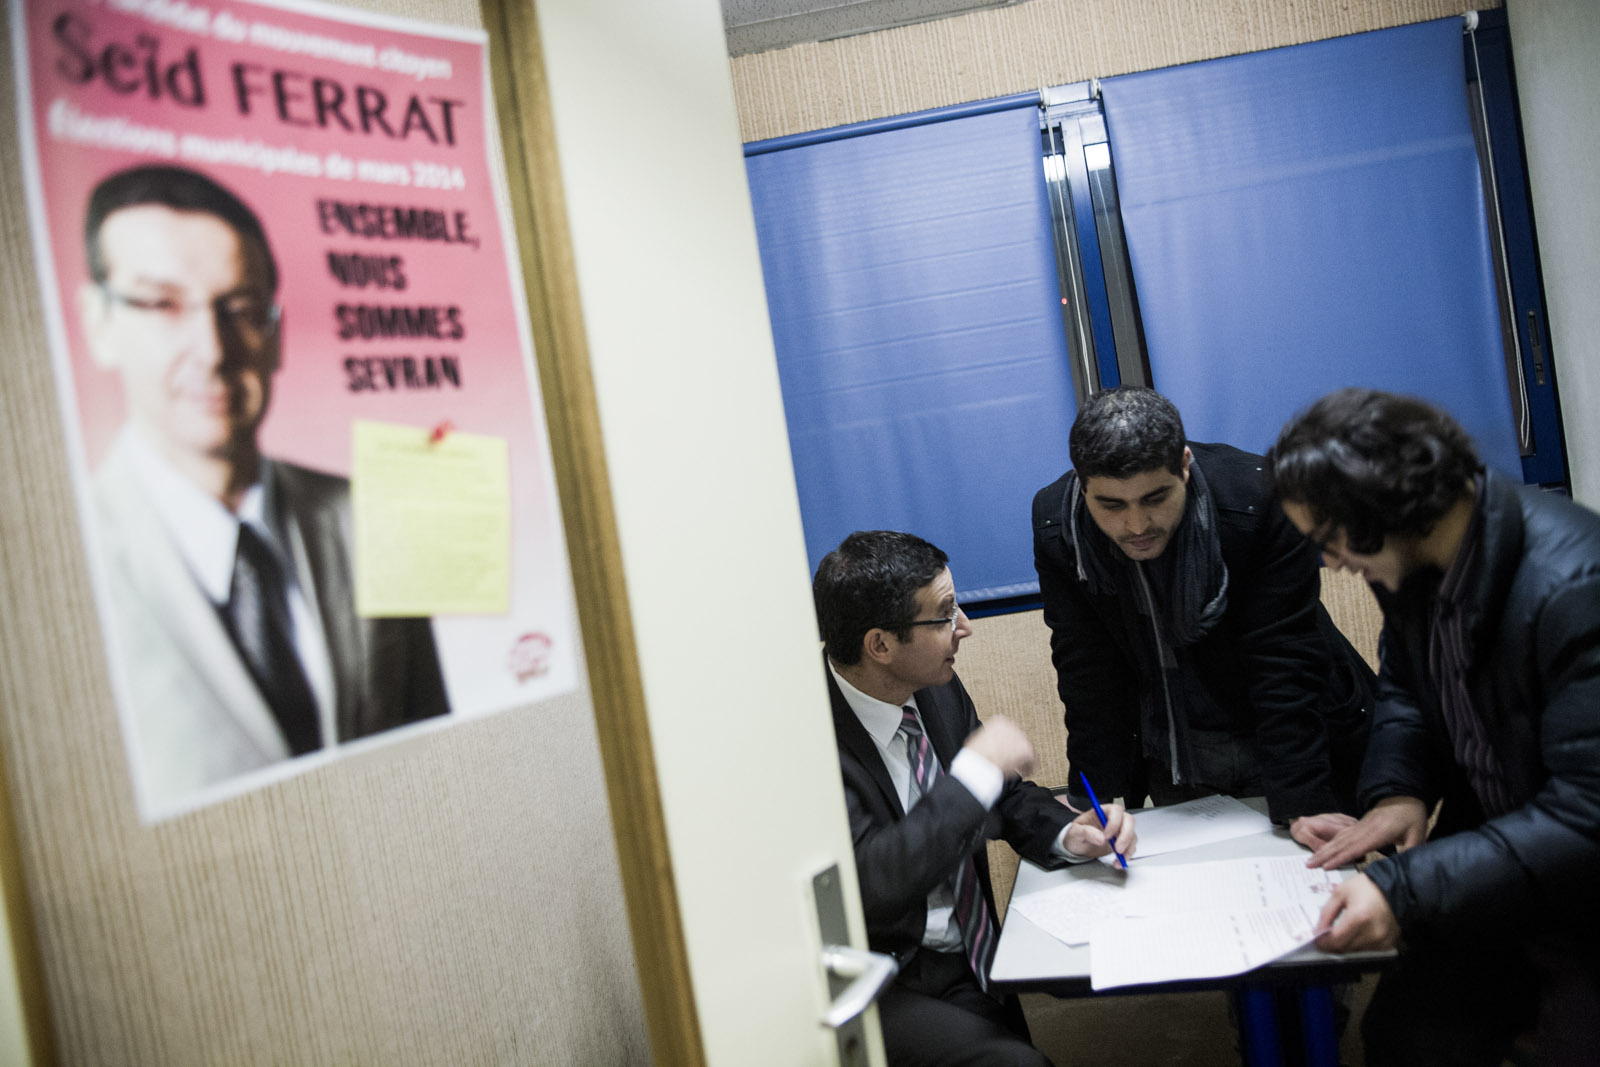 Inauguration du QG de campagne de Seïd Ferrat, candidat d'une liste citoyenne à Sevran, le 24 janvier 2014